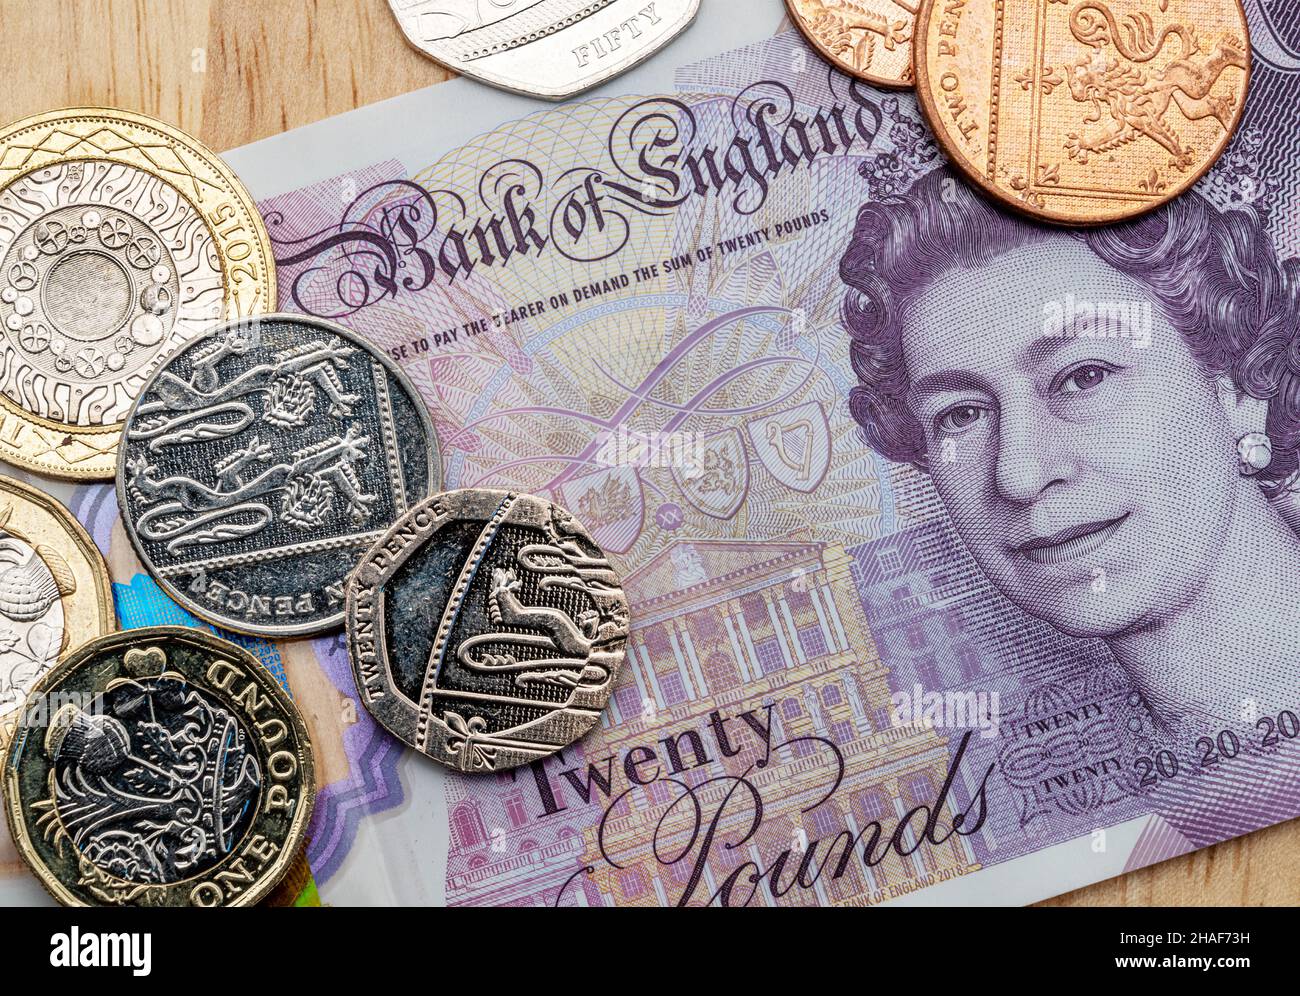 Bank of England una banconota da venti sterline con alcune monete britanniche. Foto Stock